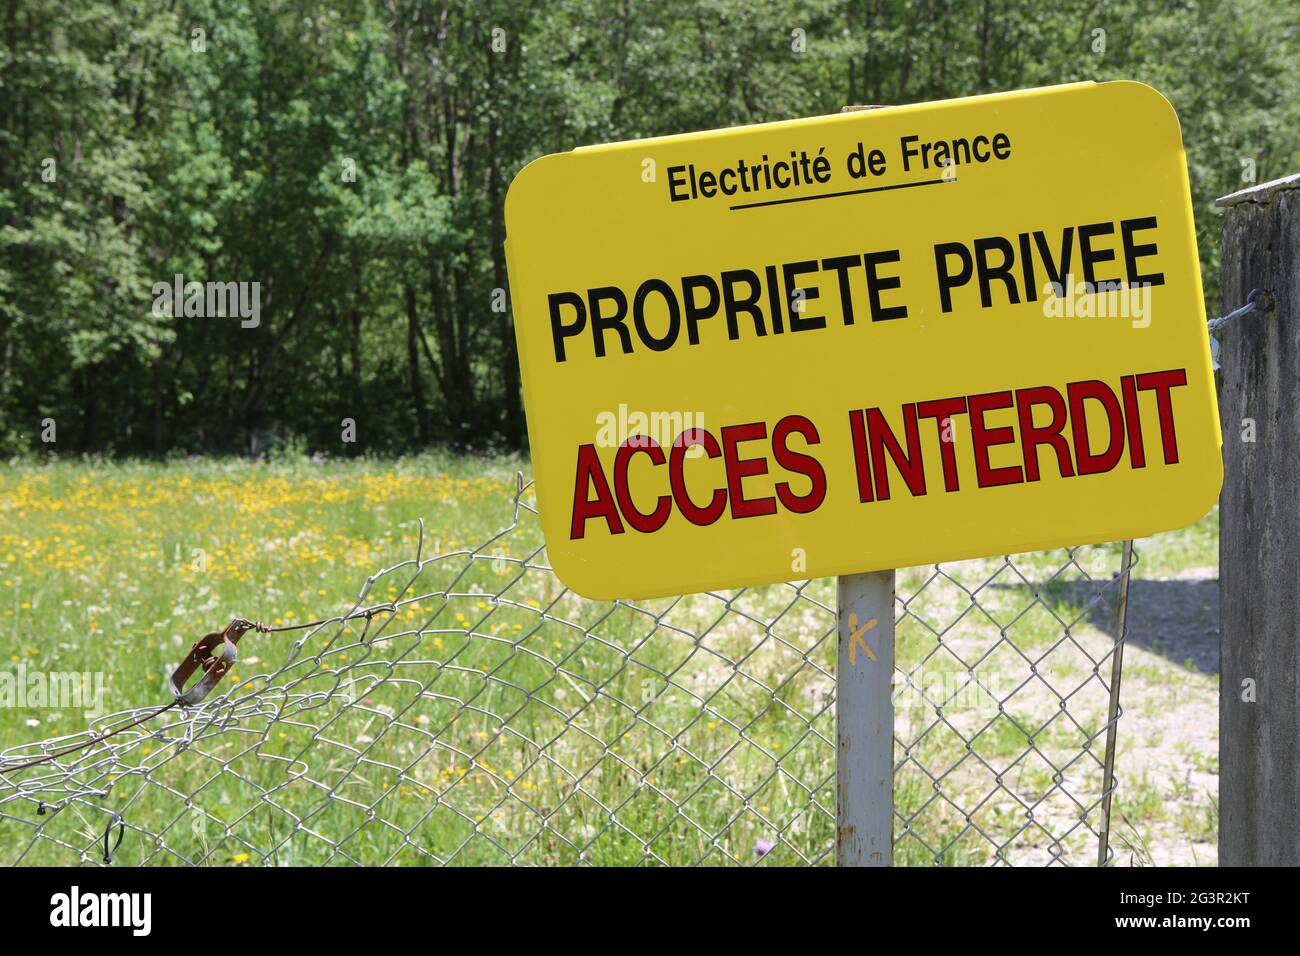 Propriété privée. Accès interdit. Electricité de France. Contamines-Montjoie. Haute-Savoie. Auvergne-Rhône-Alpes. France. Stock Photo